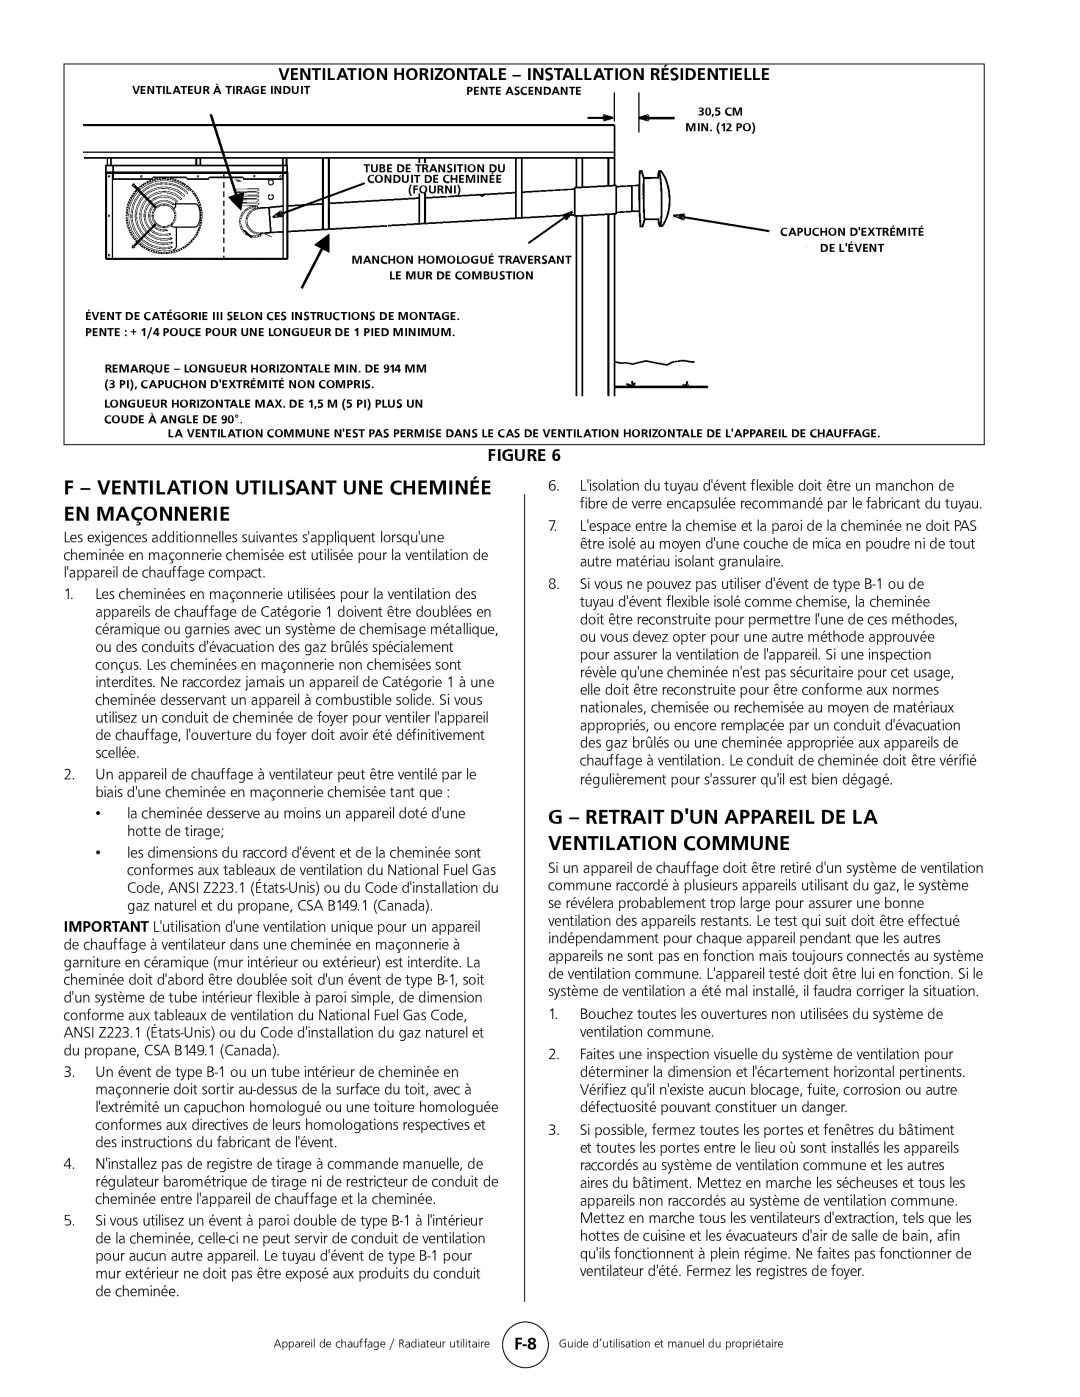 Mr. Heater MHU 50 Ventilateur À Tirage Induit, 30,5 CM MIN. 12 PO, Tube De Transition Du Conduit De Cheminée Fourni 